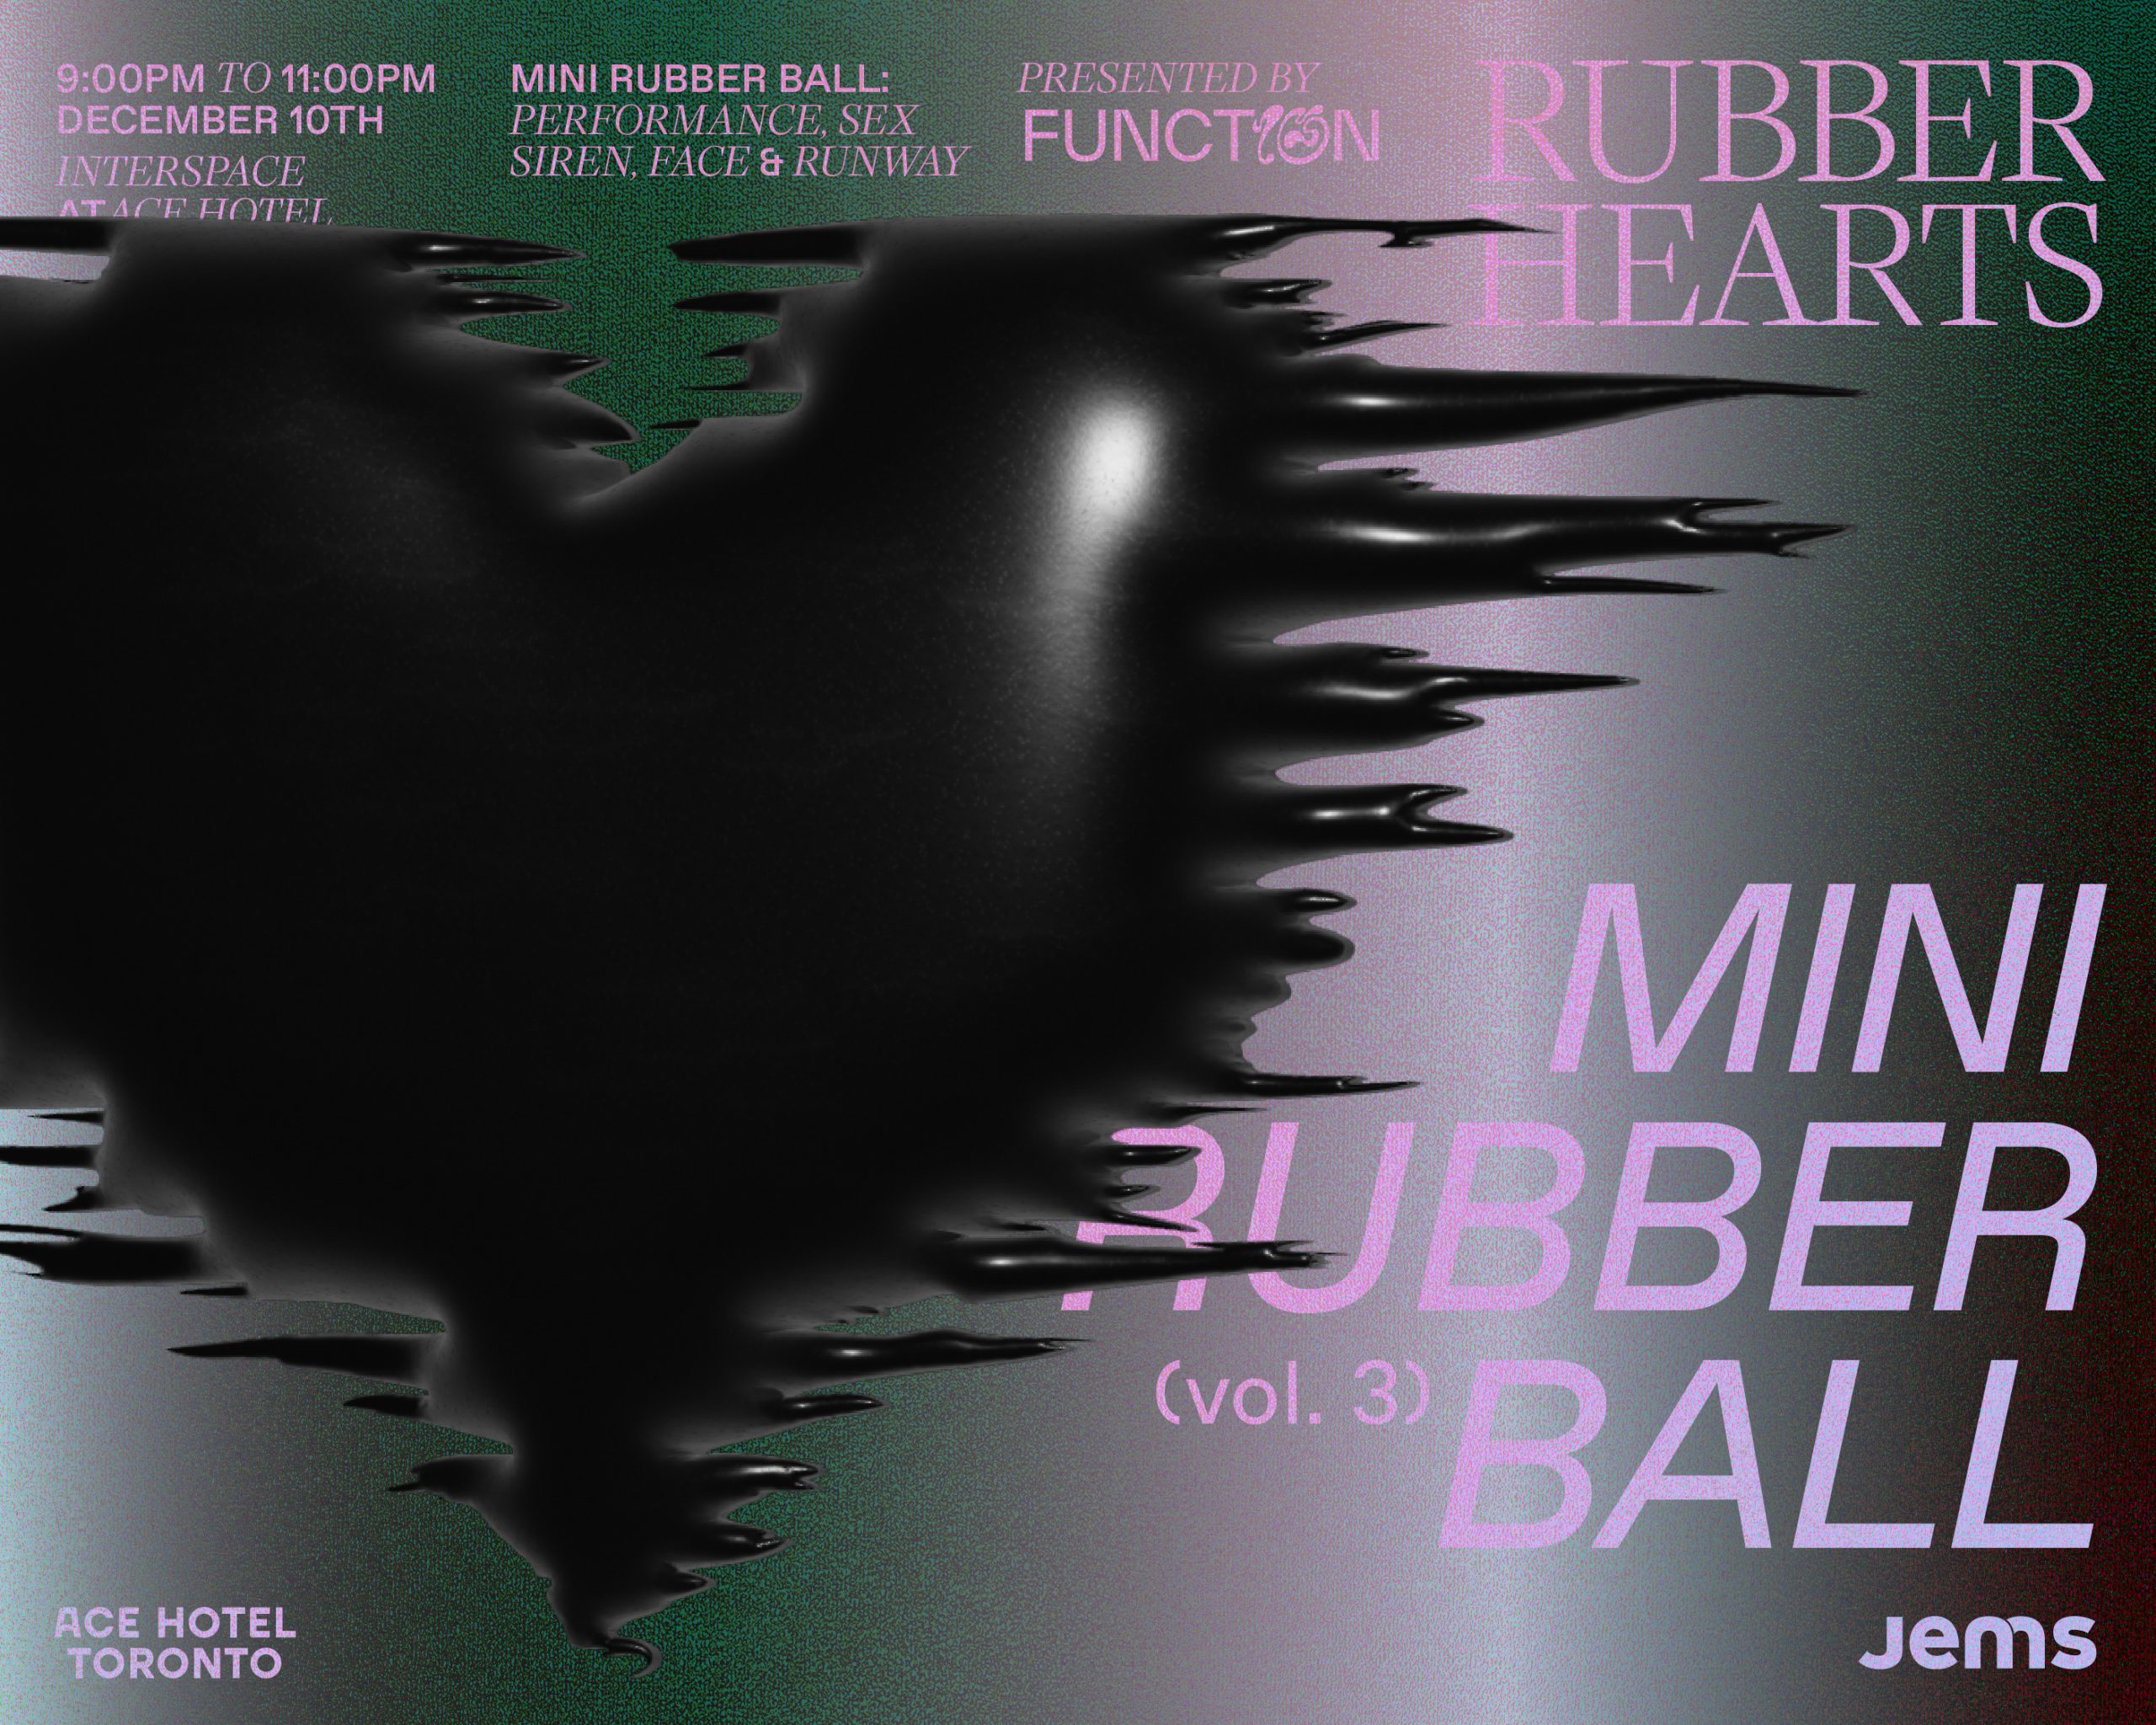 Jems Presents Rubber Hearts- Mini Rubber Ball promo